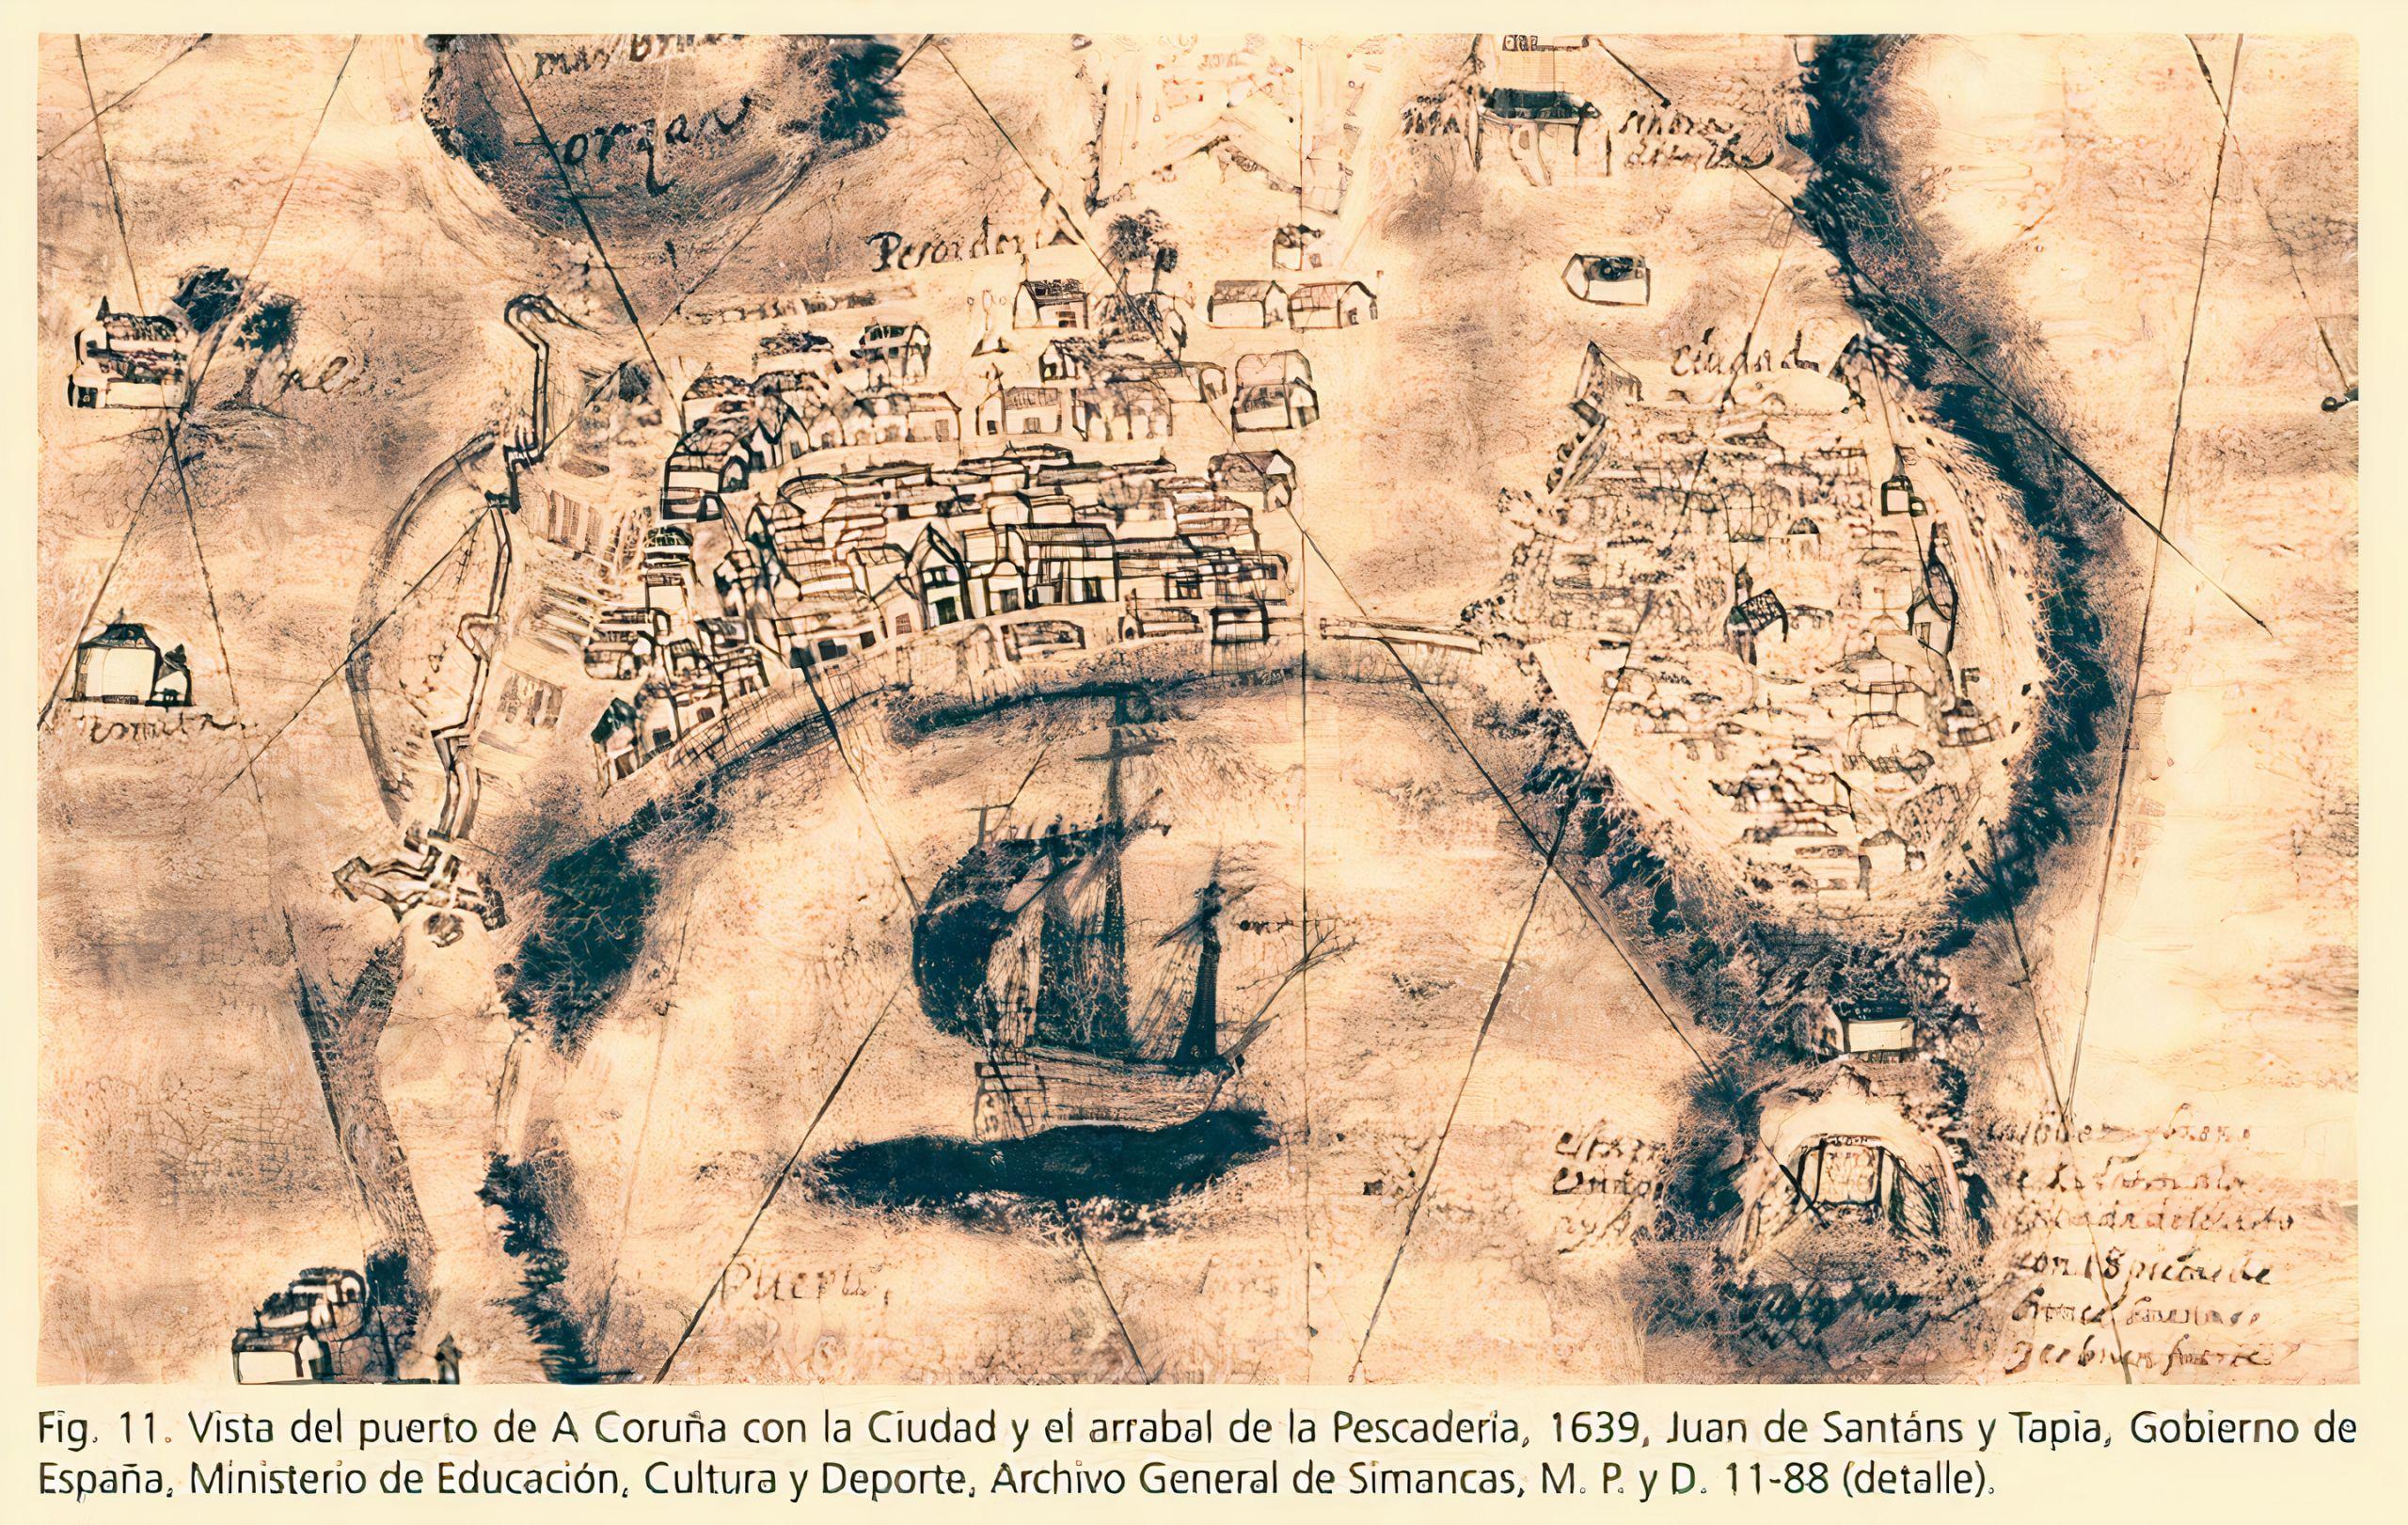 Leyenda: Vista del puerto de A Coruña con la ciudad y el arrabal de Pescadería, 1639